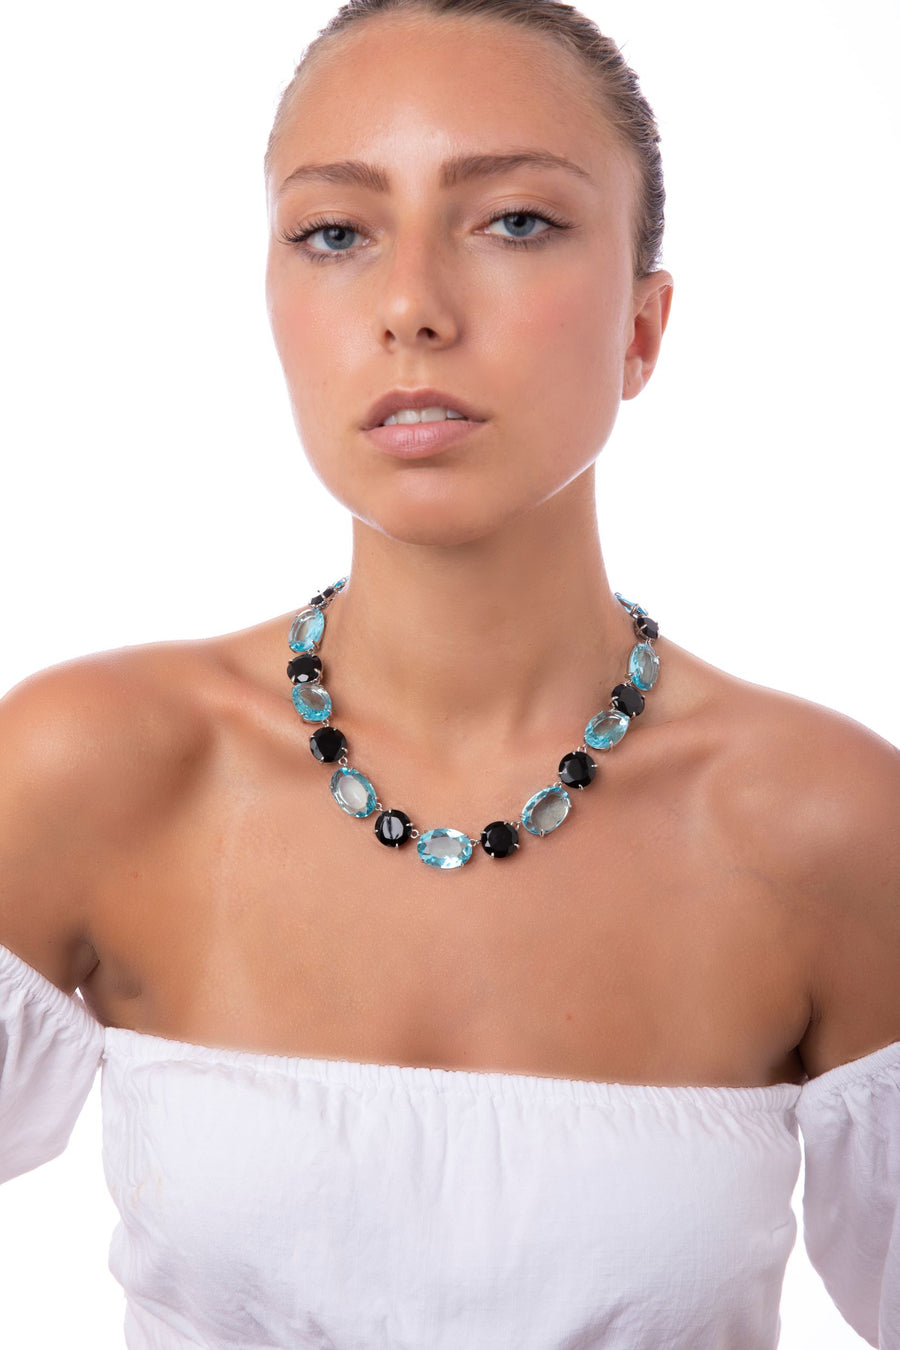 Black Onyx & Blue Quartz Necklace